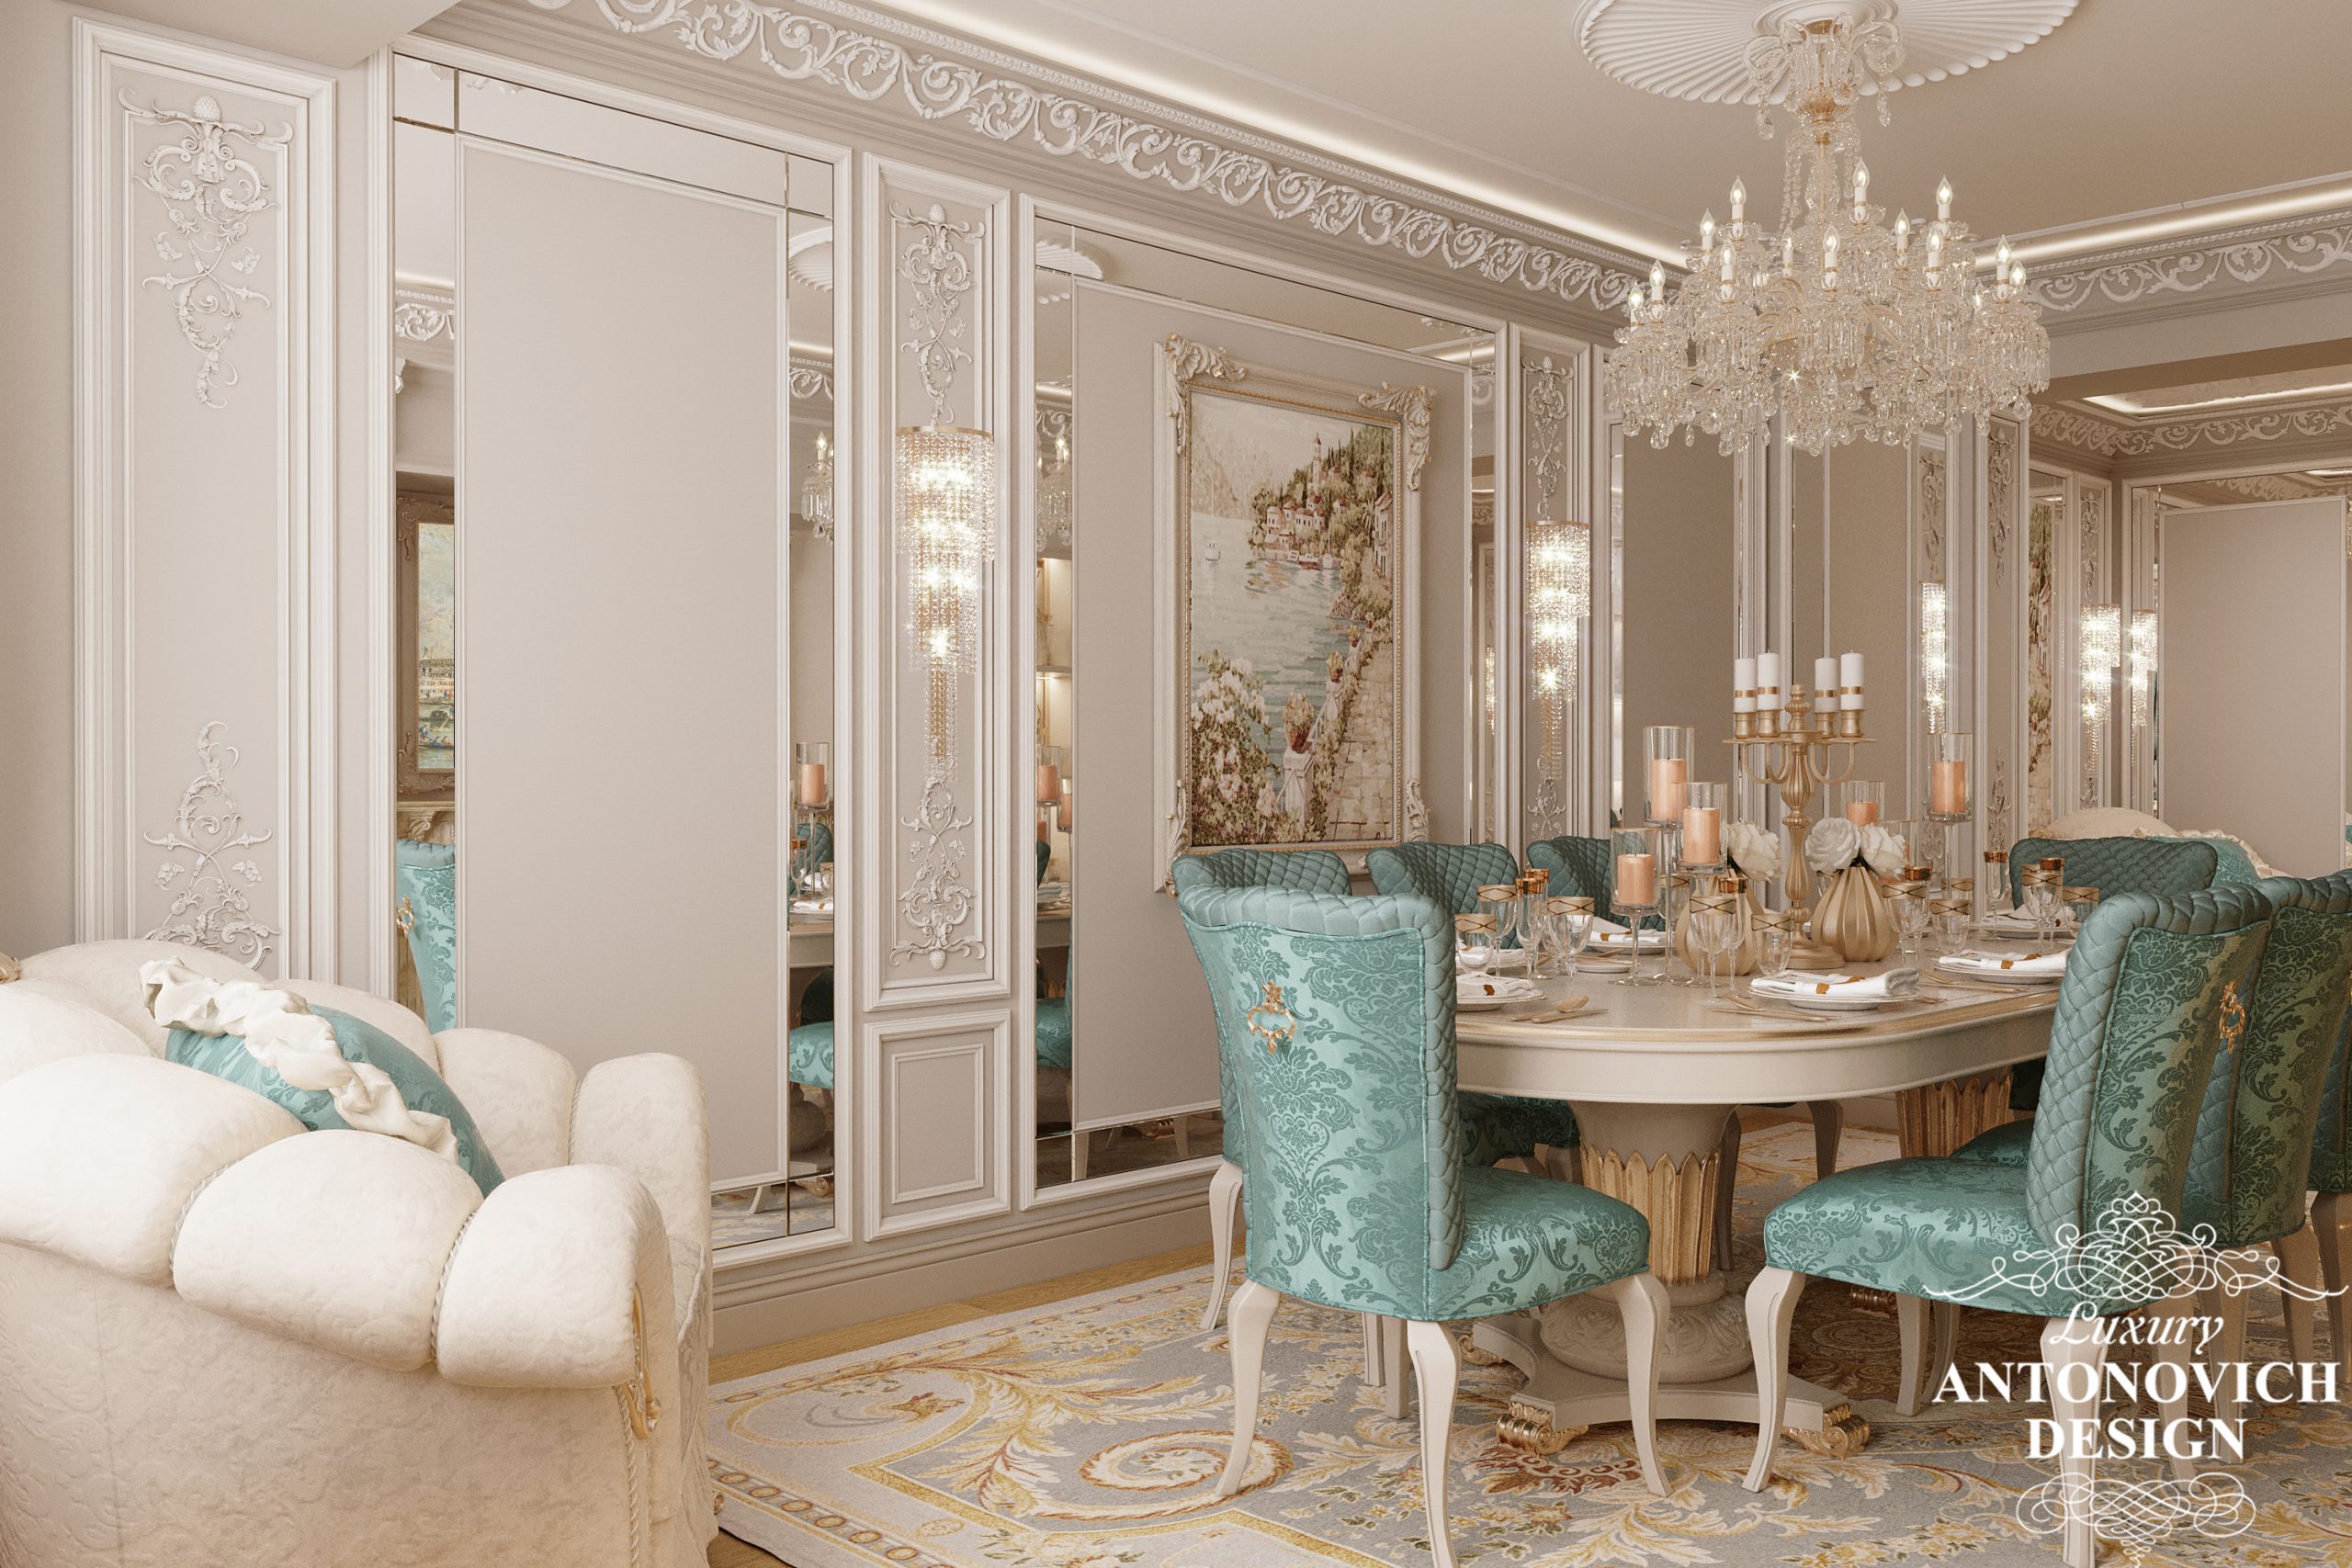 Гостиная и столовая в элегантном неоклассическом стиле с бархатным текстилем и изумительным декором в авторском дизайнерском проекте элитной квартиры